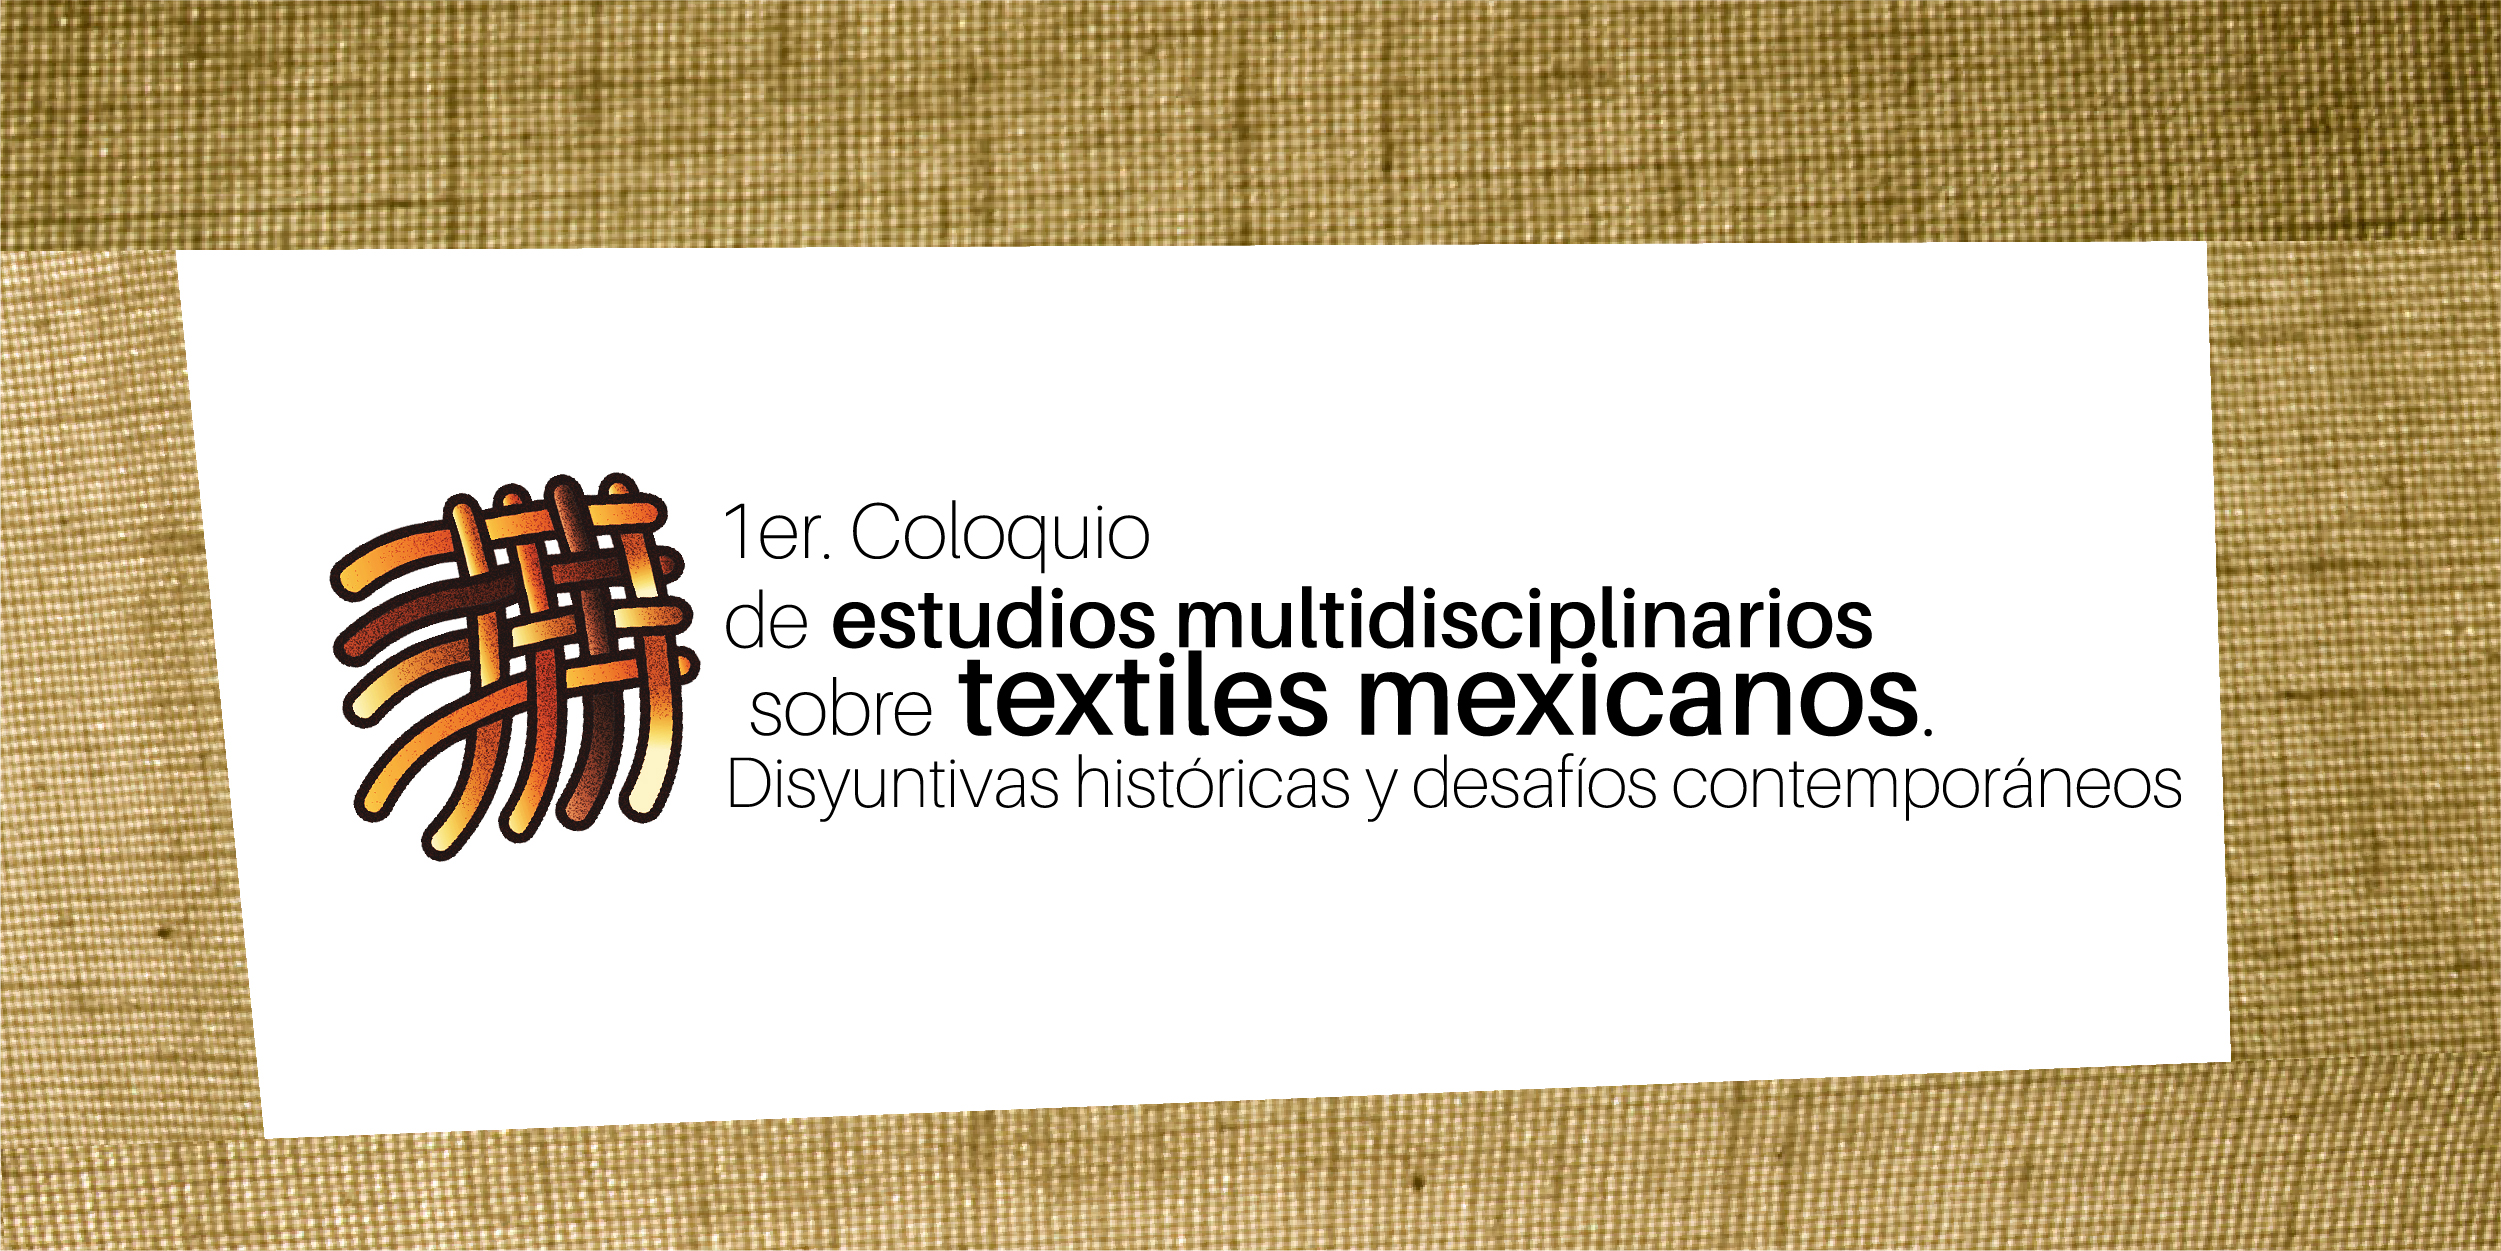 textiles_mexicanos.jpg